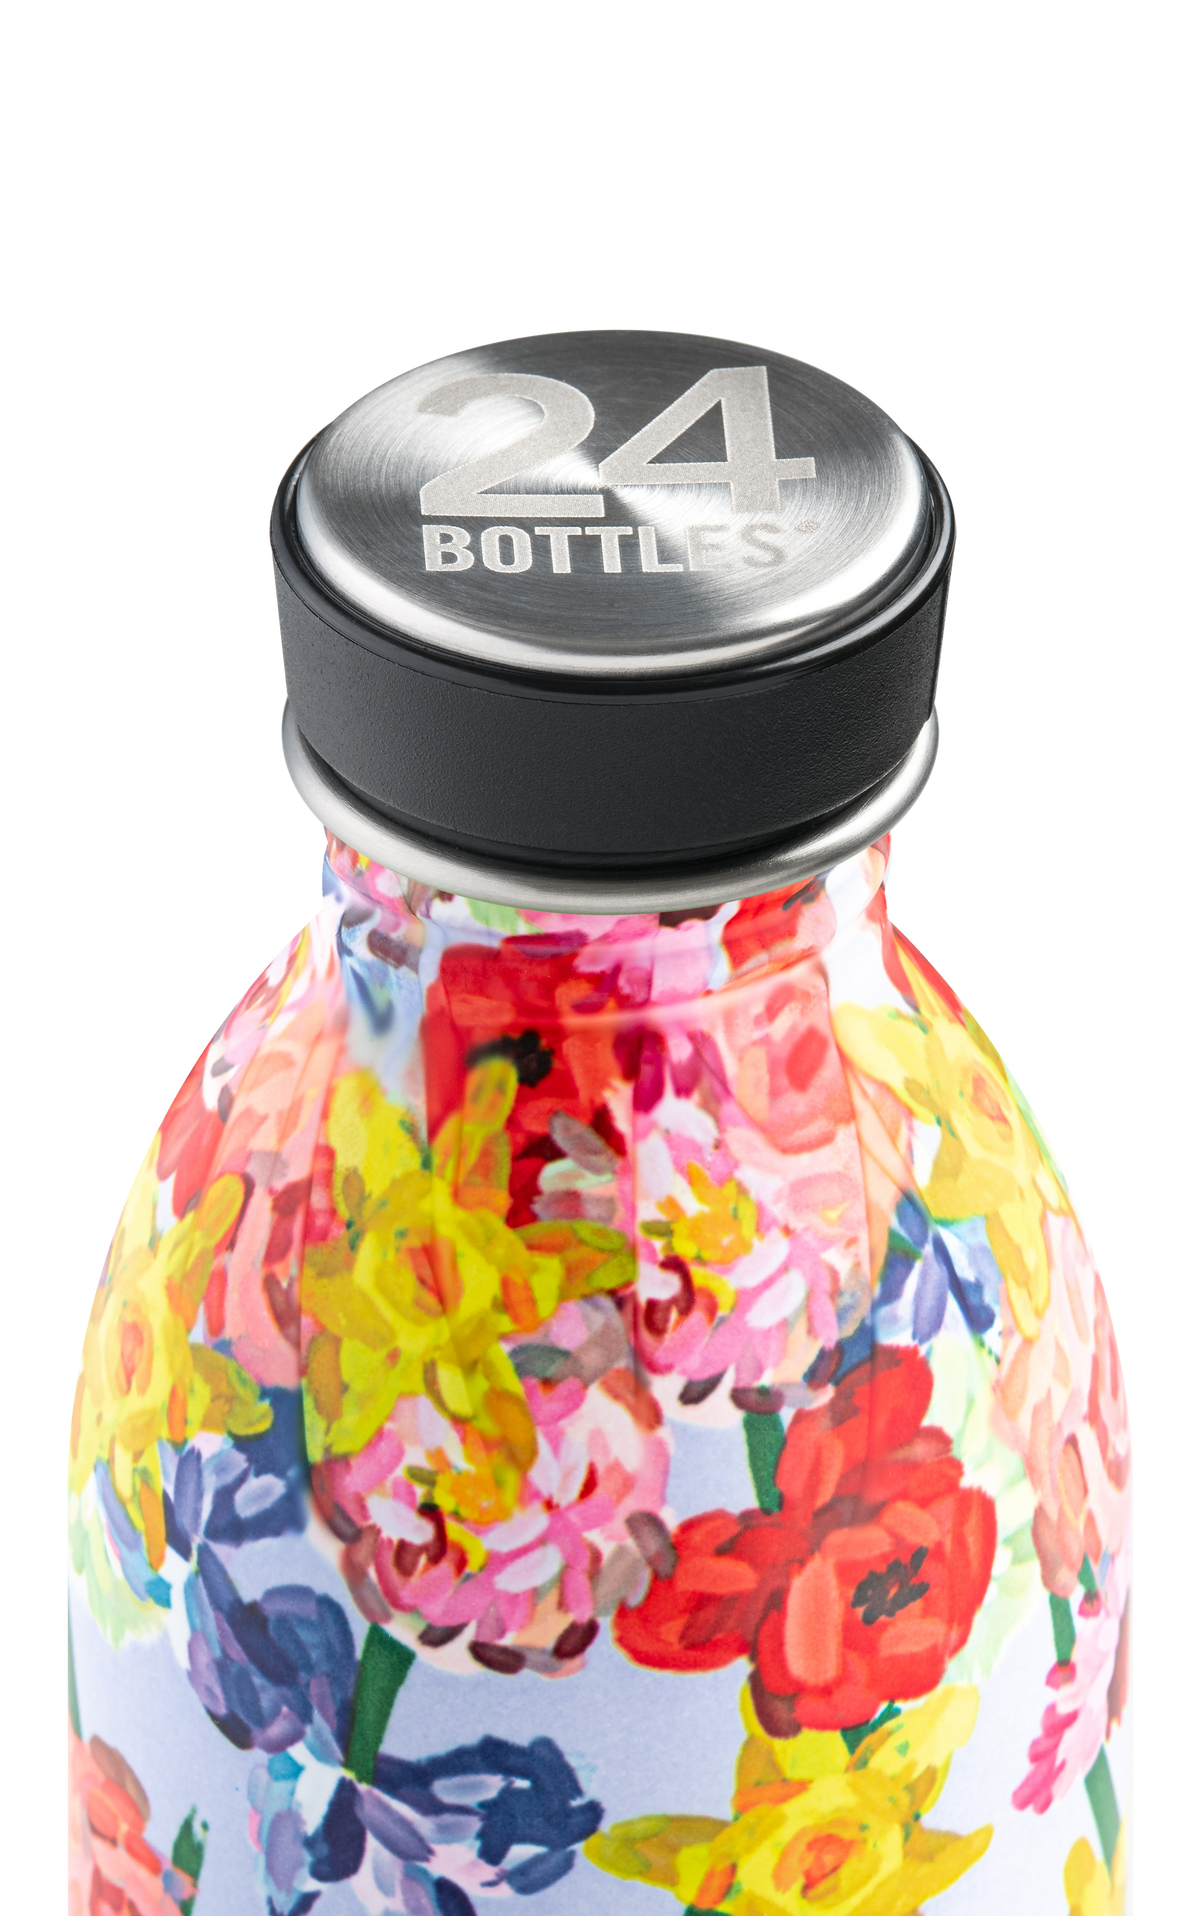 24BOTTLES Urban Lightest Stainless Steel Water Bottle - 500ml - Flower Fall